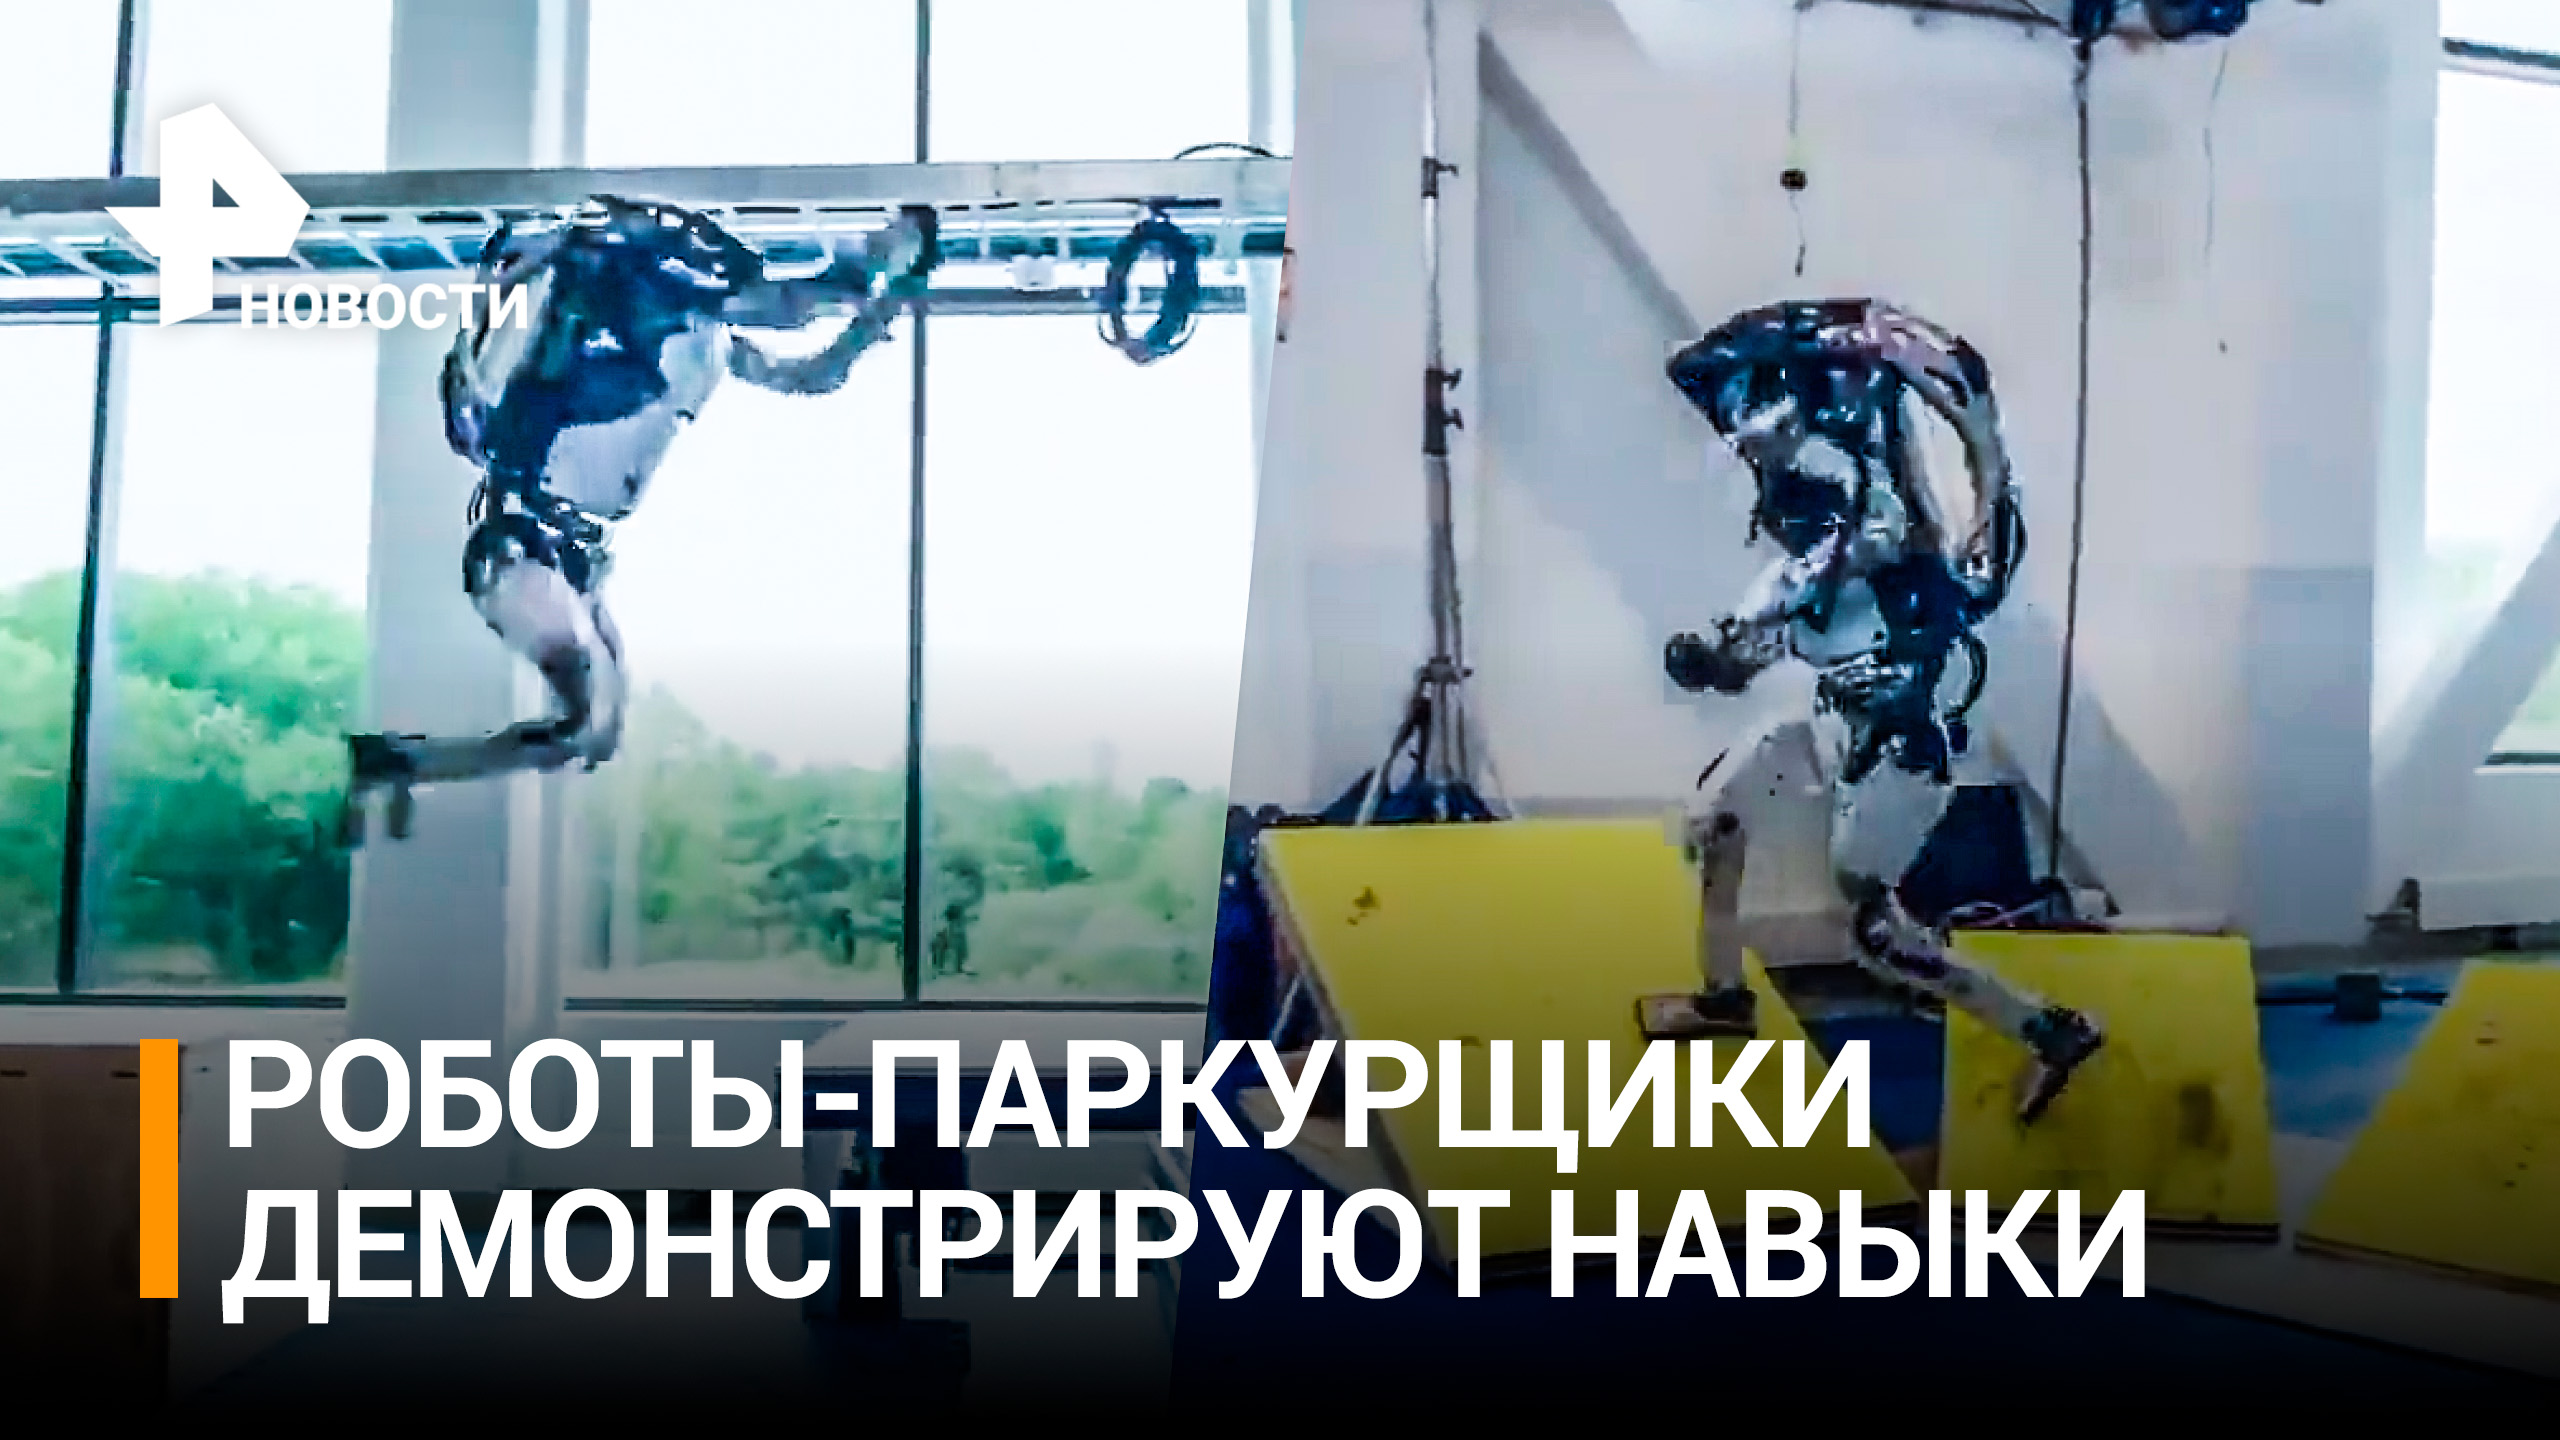 Робот освоил паркур: трюки от "железного человека" Boston Dynamics / РЕН Новости